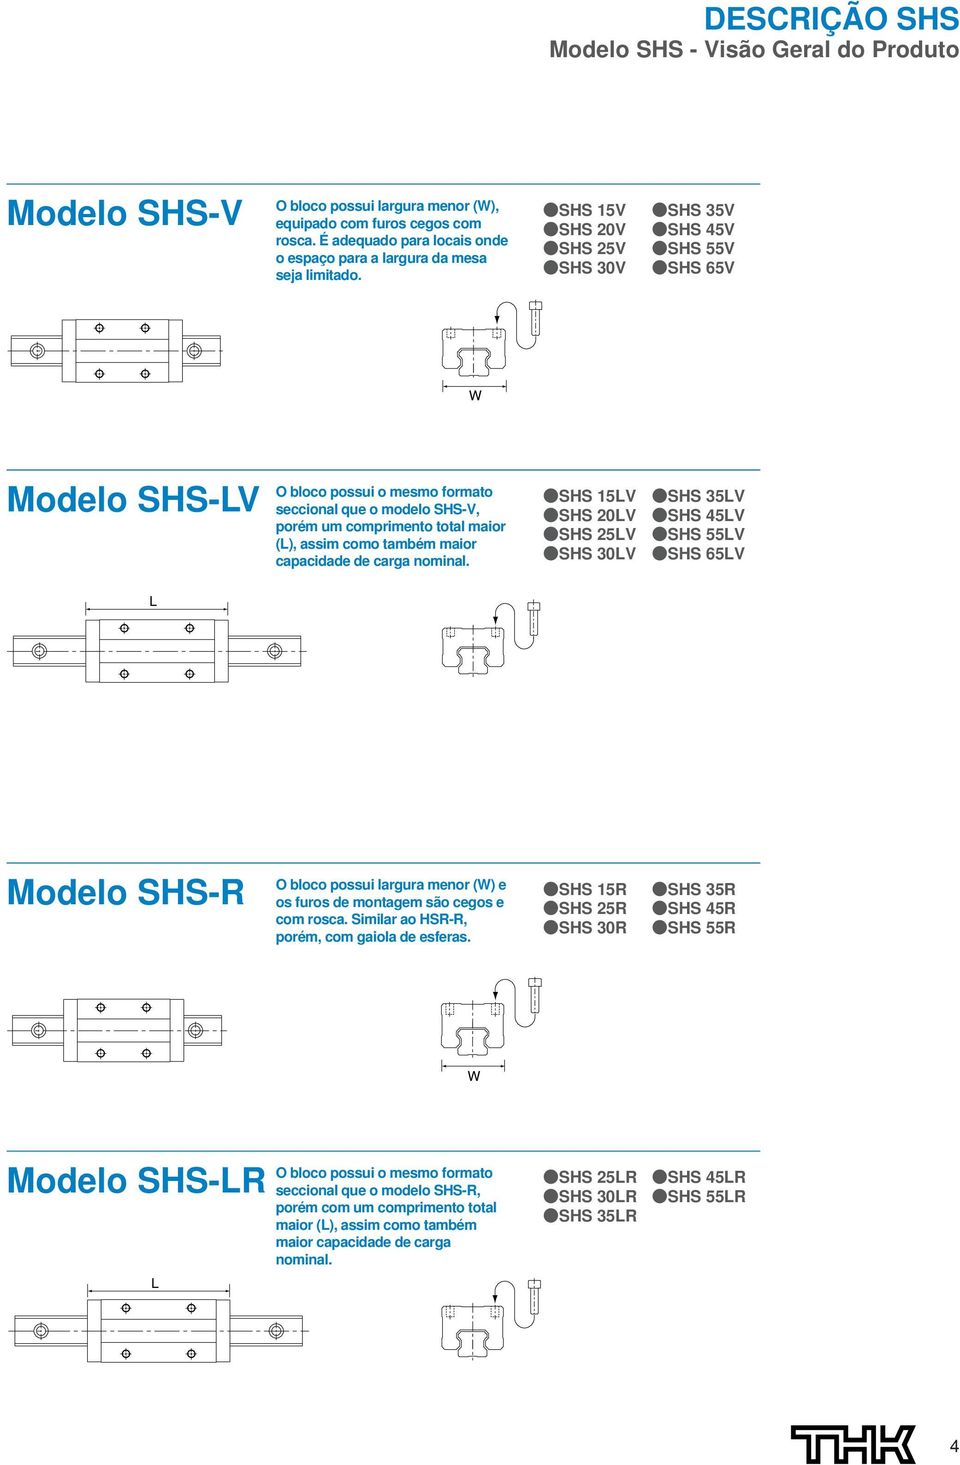 SHS V SHS 2V SHS 2V SHS V SHS V SHS V SHS V SHS V Modelo SHS-LV O bloco possui o mesmo formato seccional que o modelo SHS-V, porém um comprimento total maior (L), assim como também maior capacidade